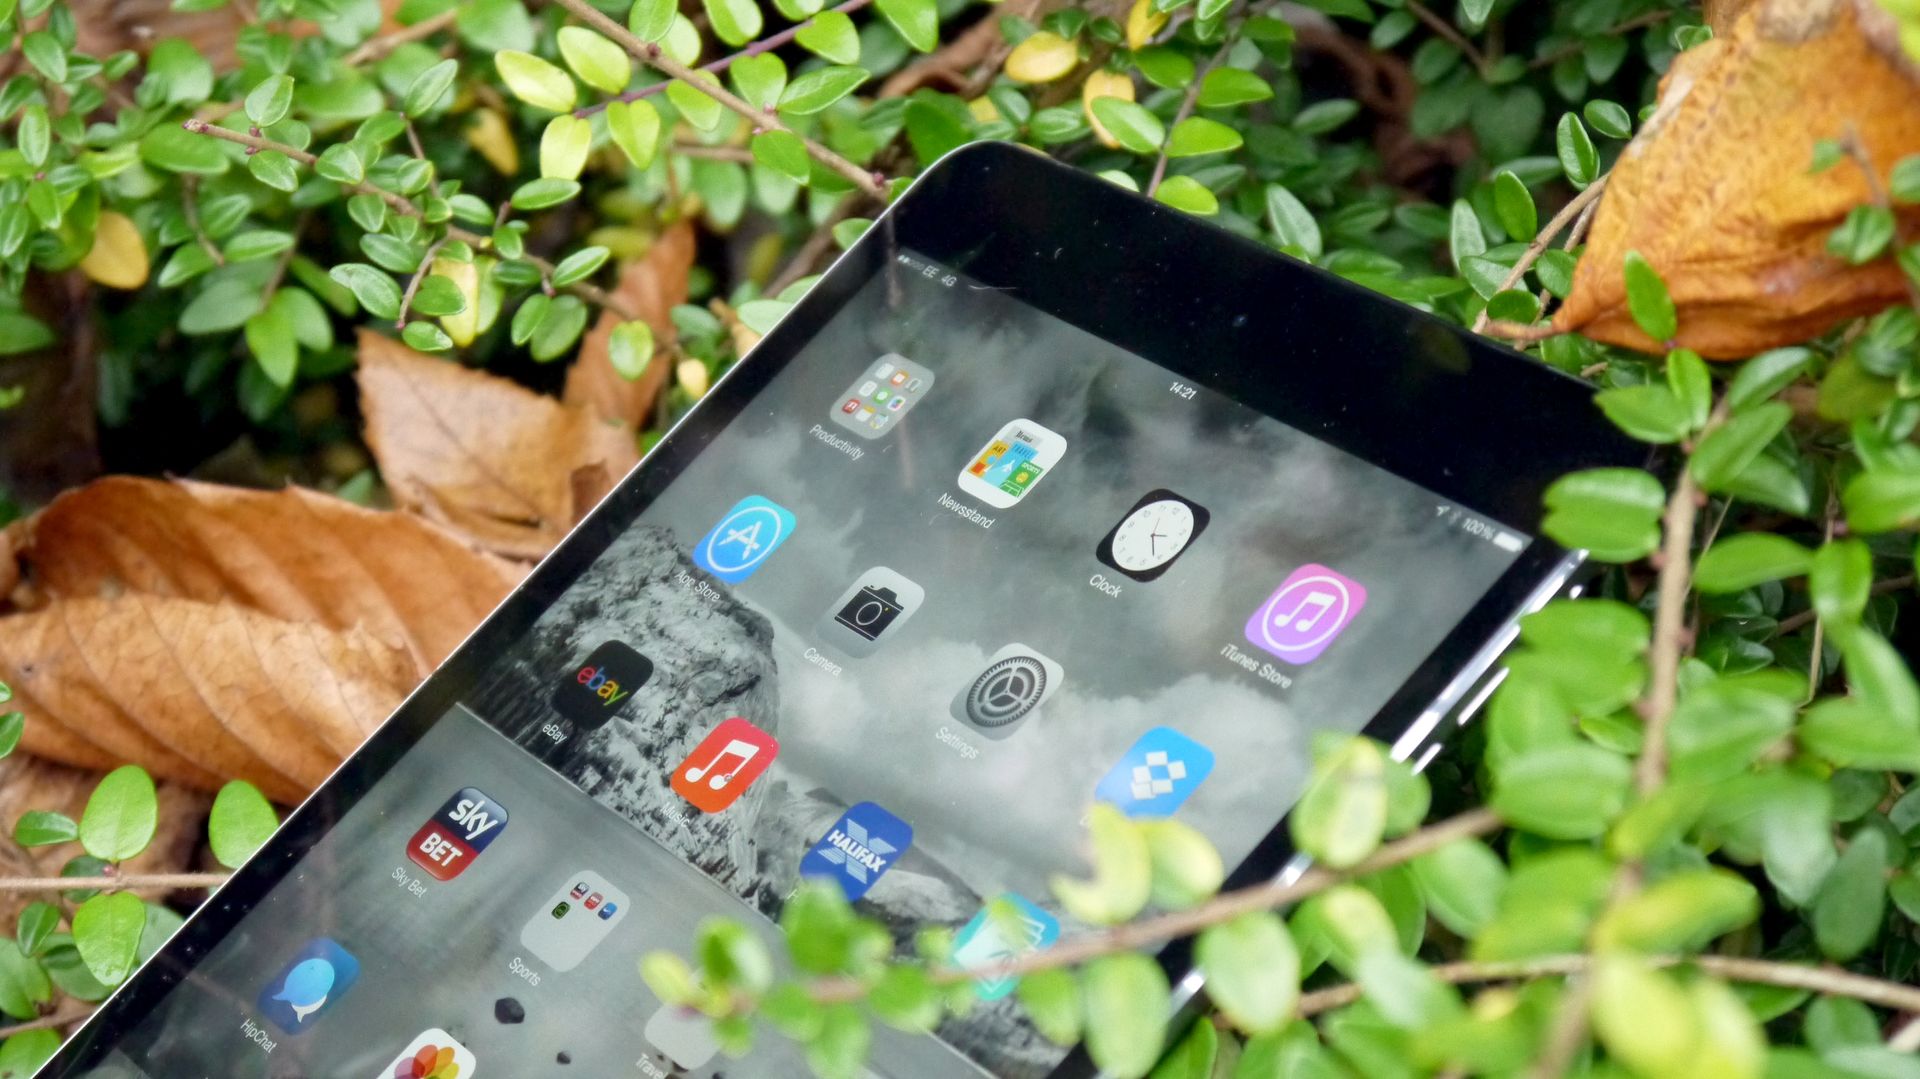 iPad mini 3 looks set to be revealed alongside iPad Air 2 TechRadar